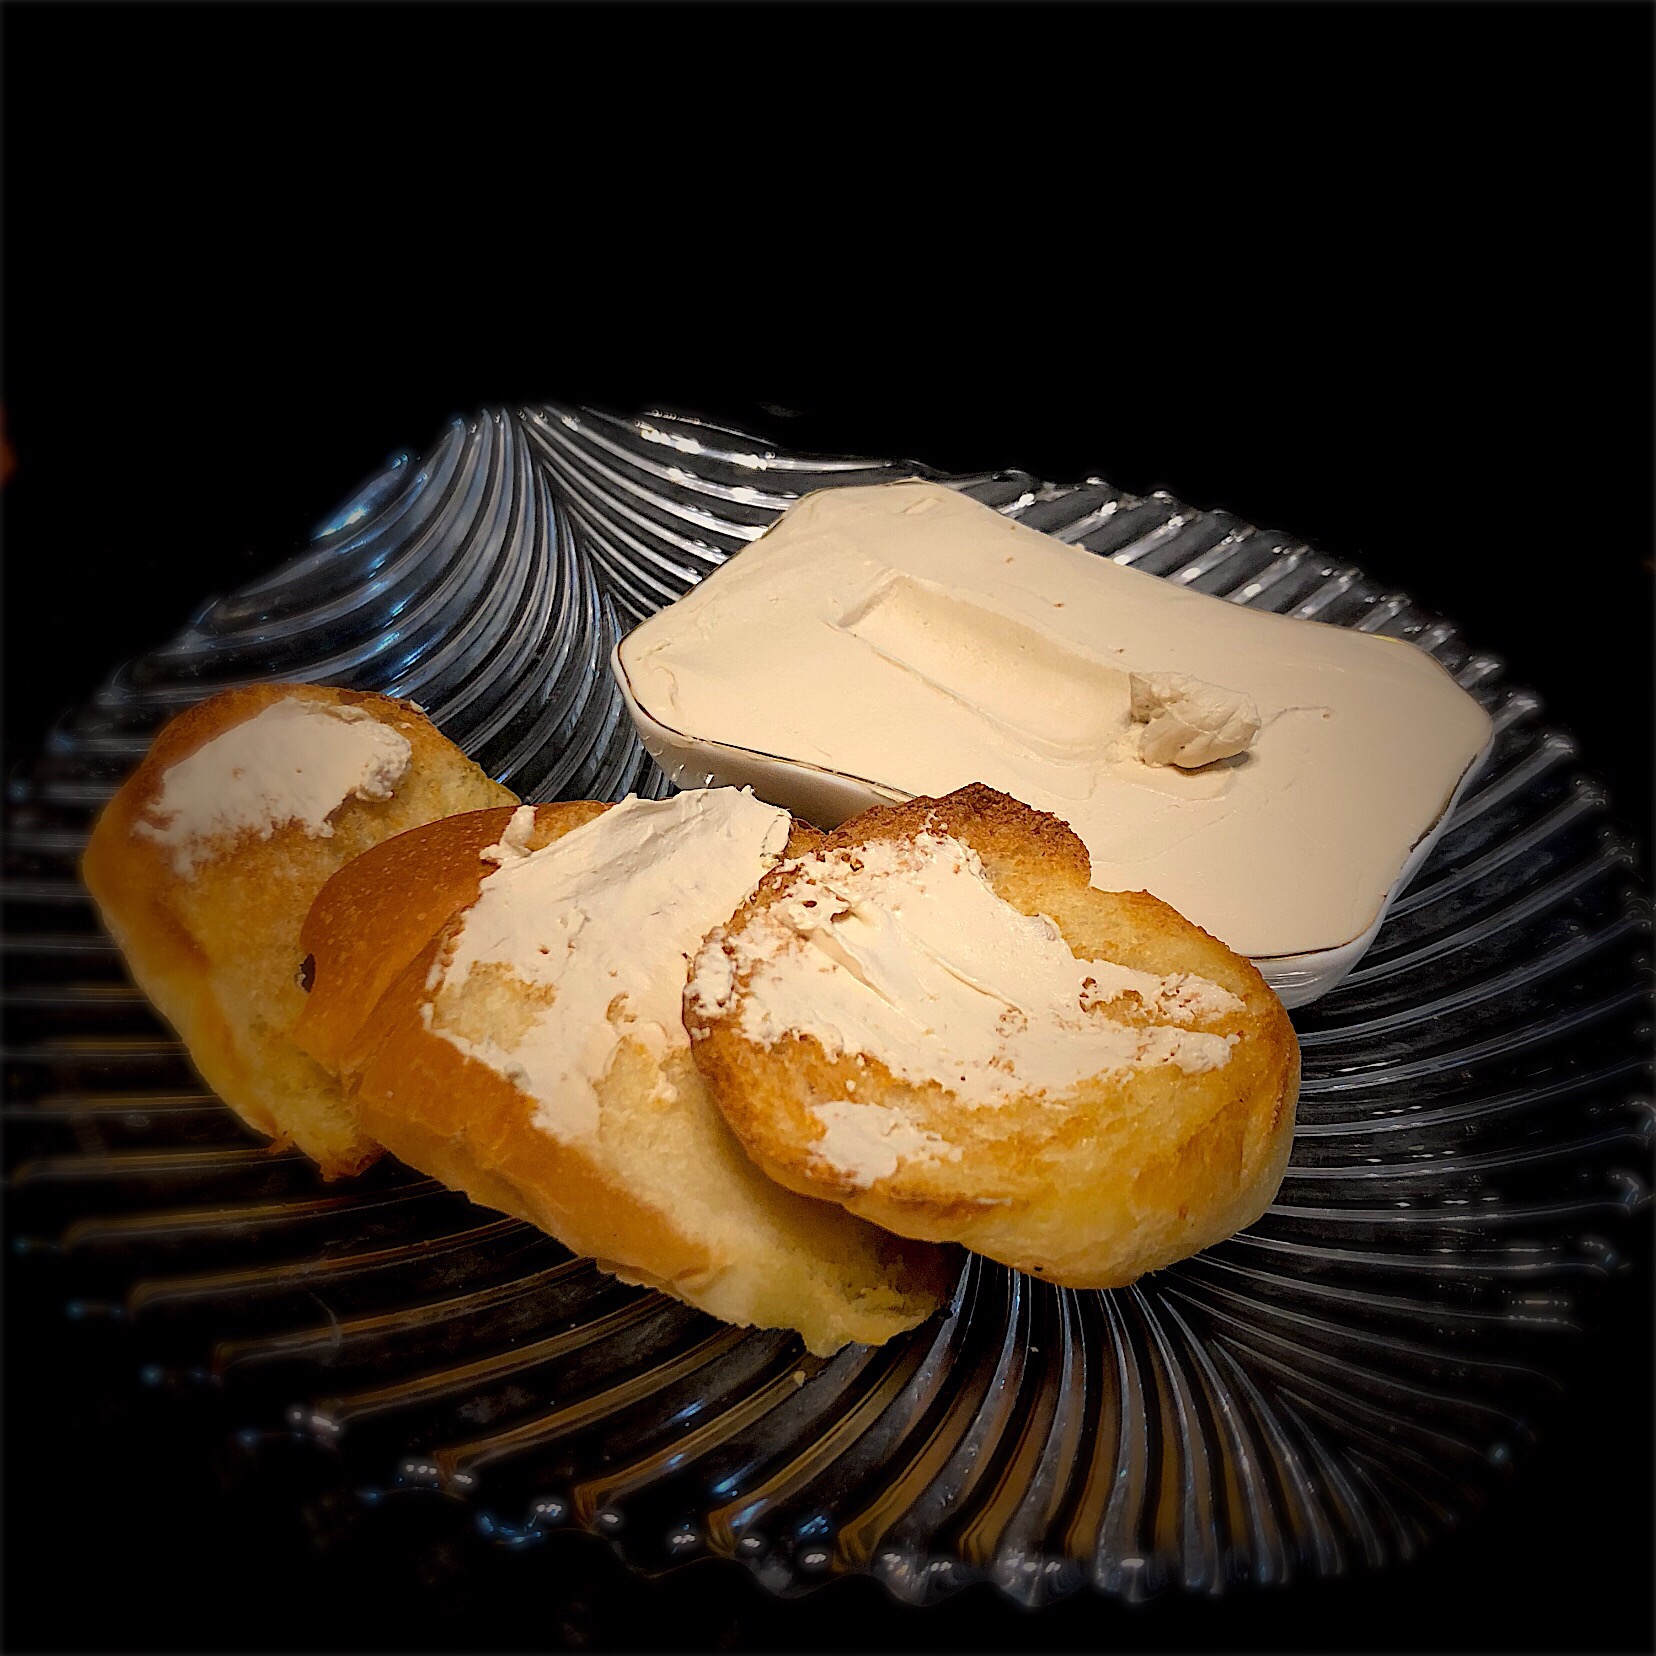 お醤油＋ヨーグルトで まるでチーズ #水切りヨーグルト #お醤油水切りヨーグルト #チーズスプレッド #マヨネーズ代用品